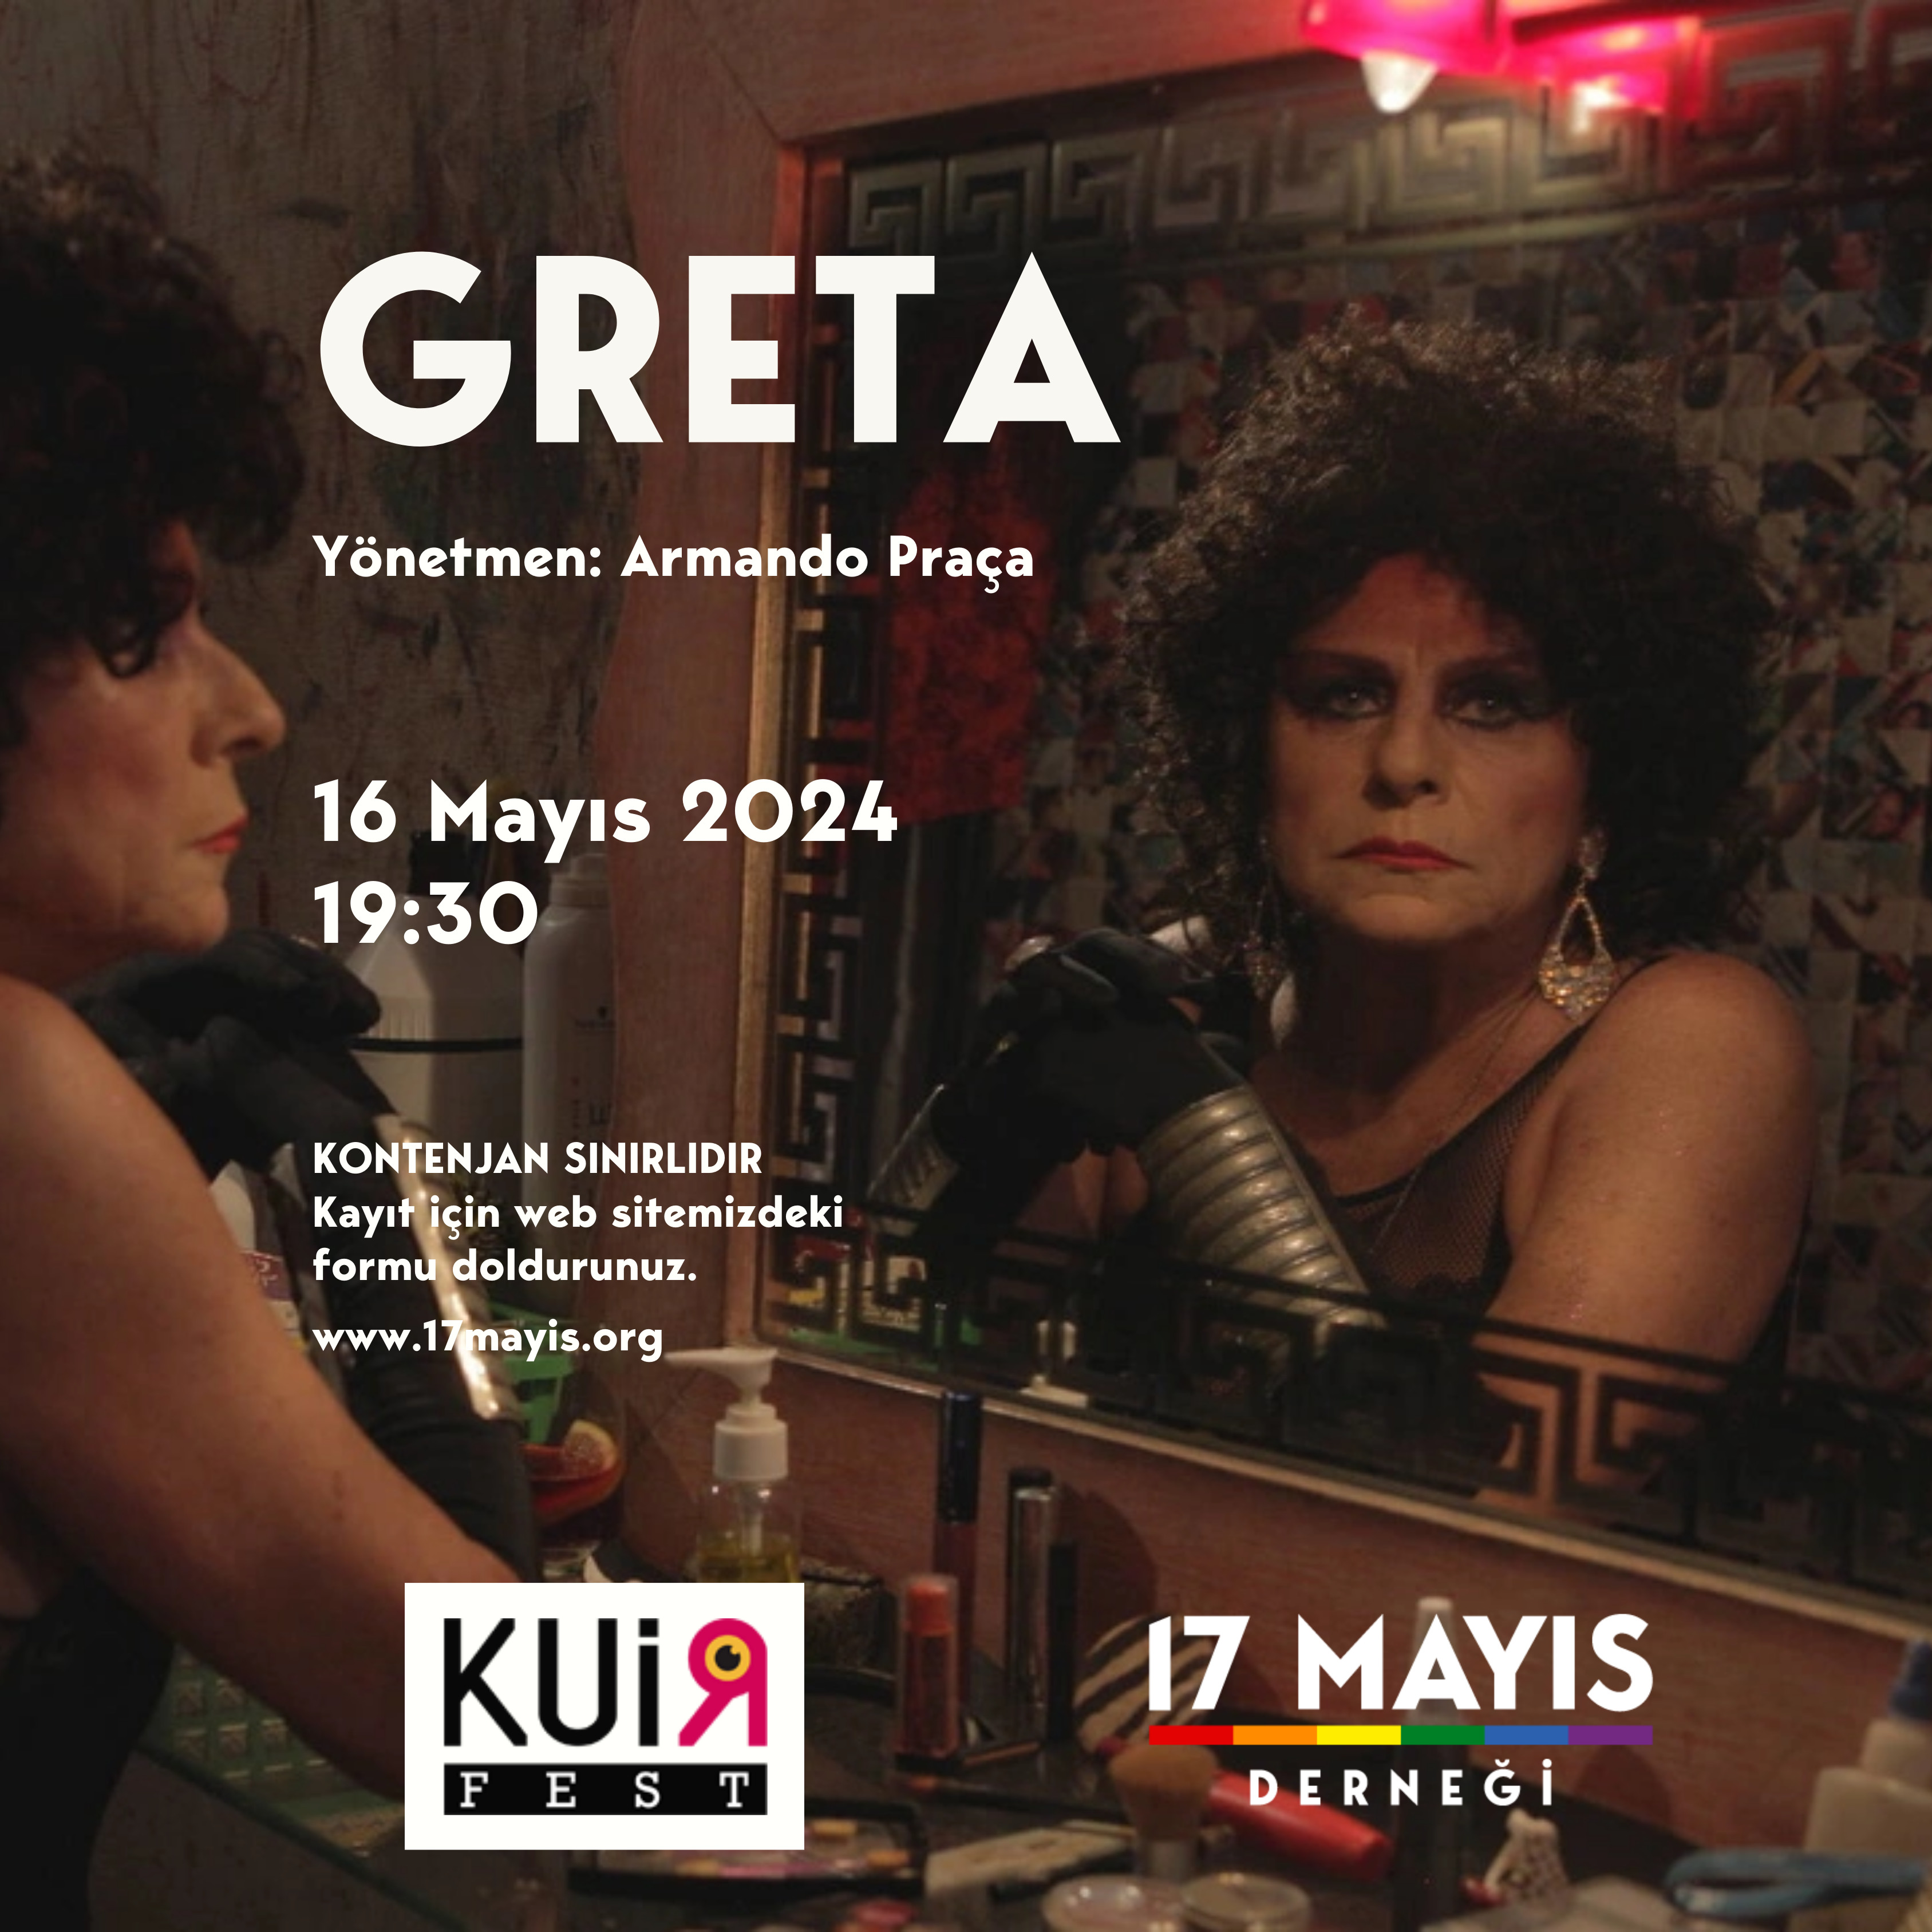 Greta (2019) film gösterimi etkinliğine davetlisiniz - 17 Mayıs